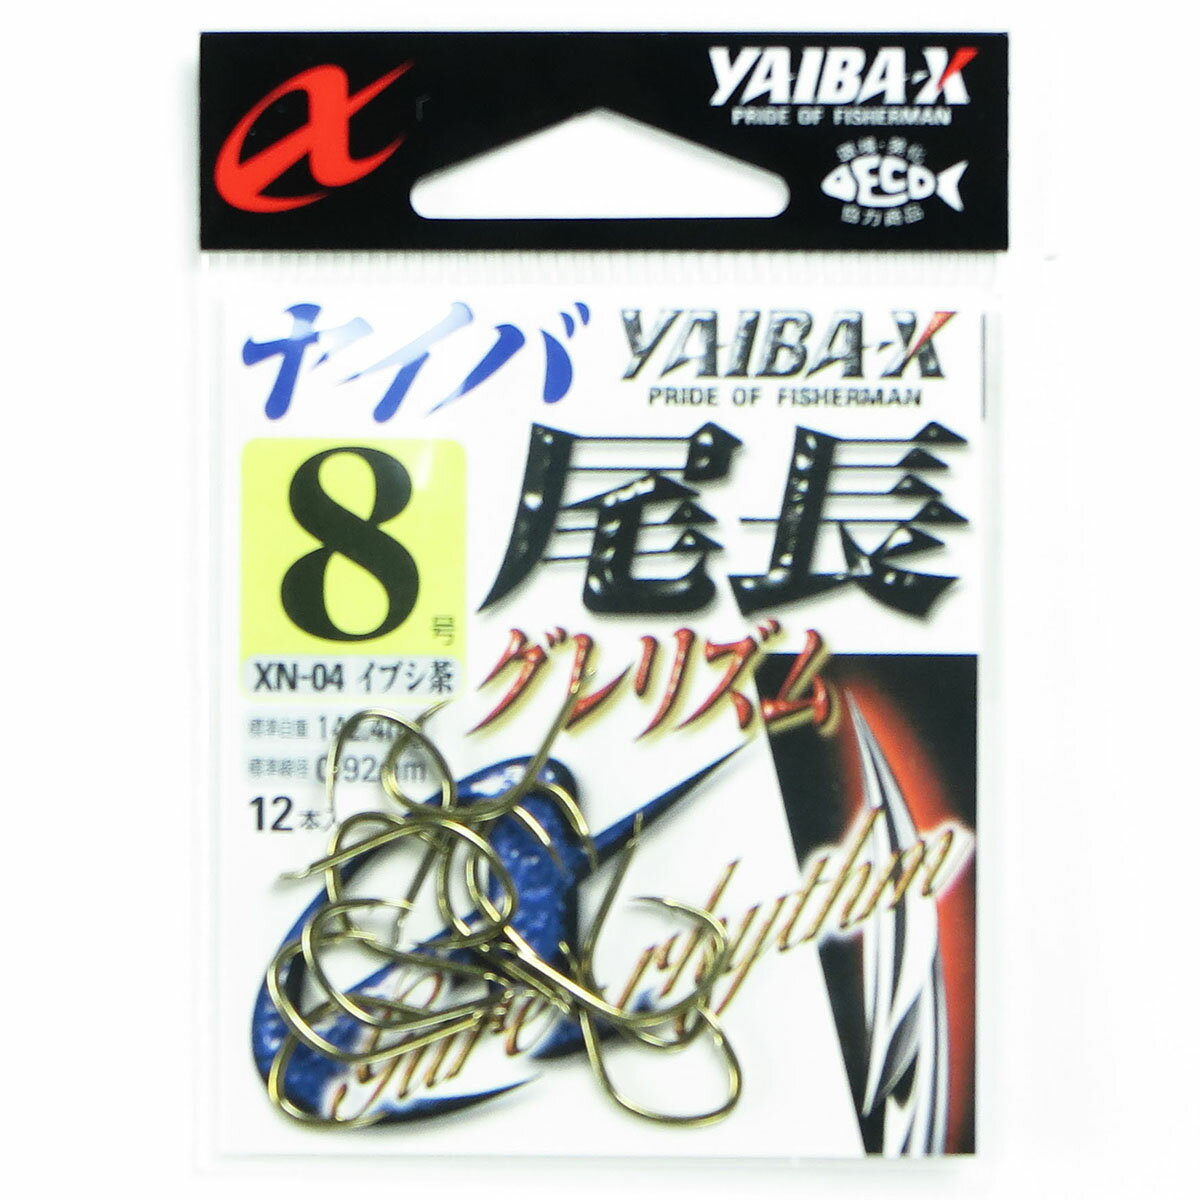 「 ささめ針 SASAME XN-04 ヤイバ尾長 グレリズム 8号 12本入 茶 」  釣り 釣り具 釣具 釣り用品